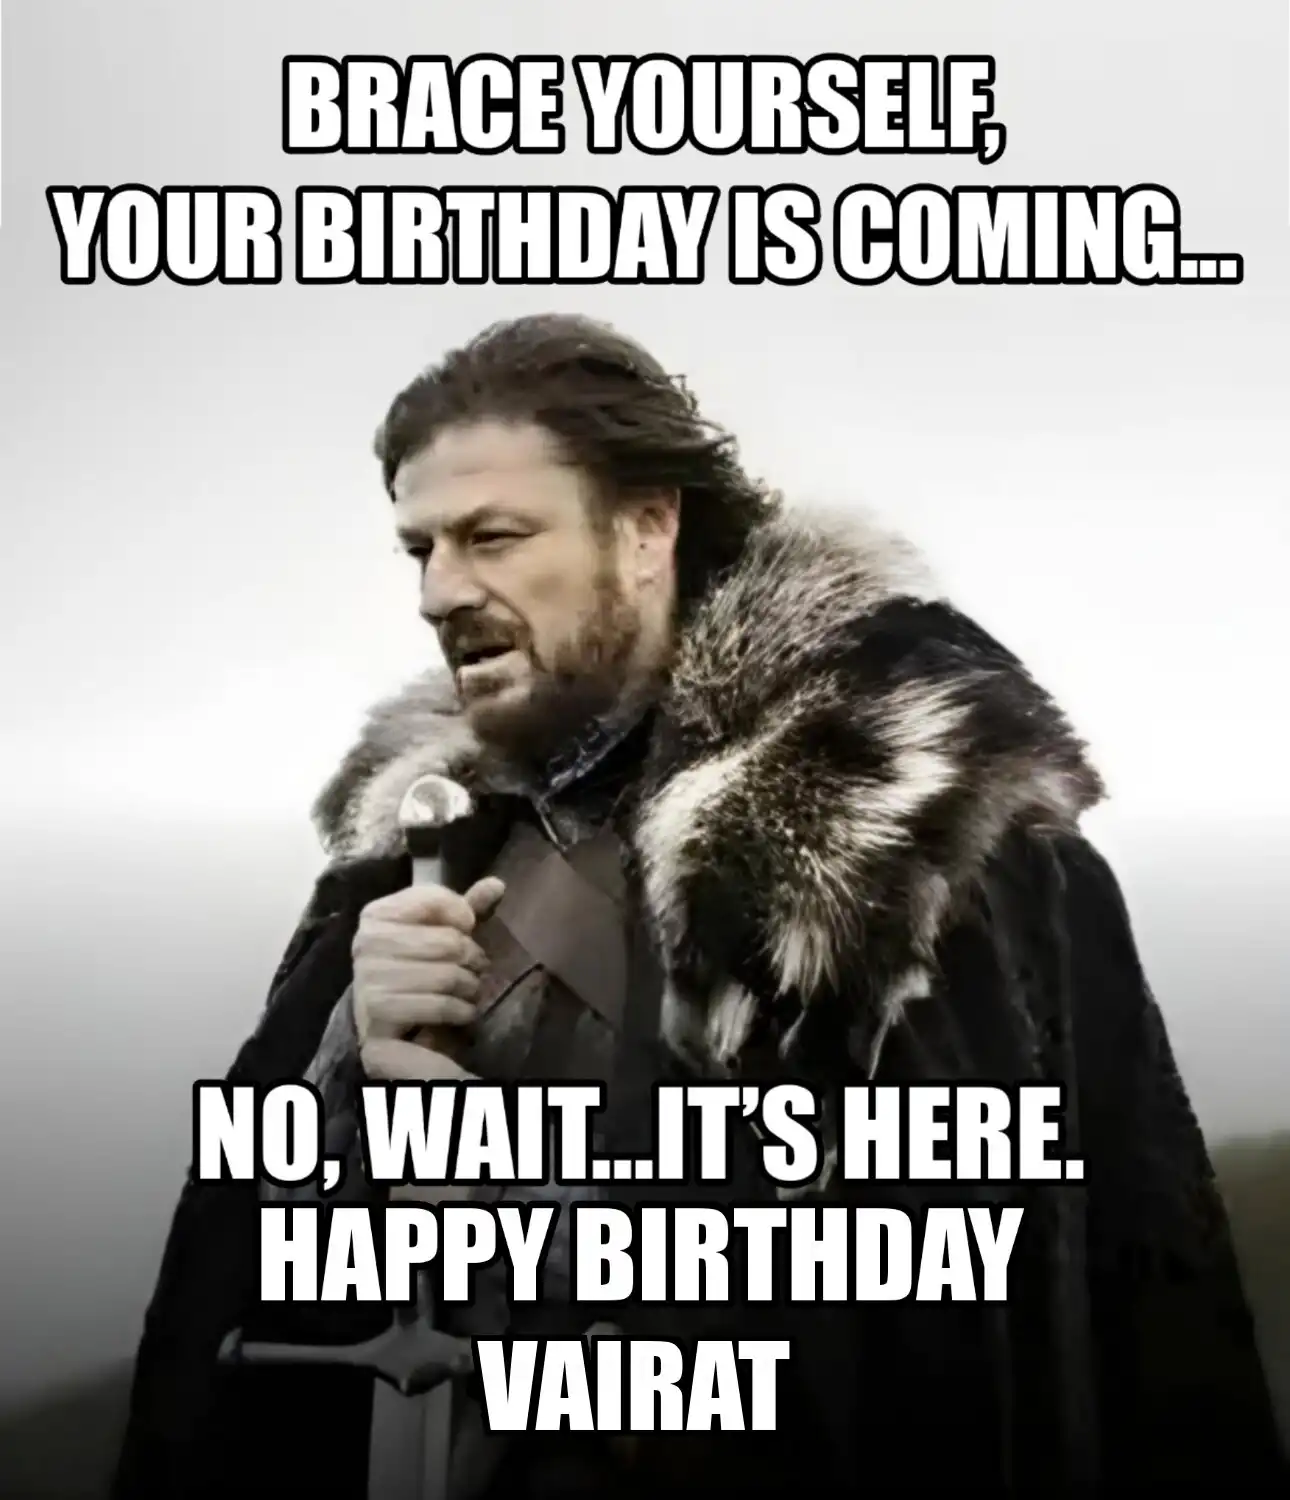 Happy Birthday Vairat Brace Yourself Your Birthday Is Coming Meme